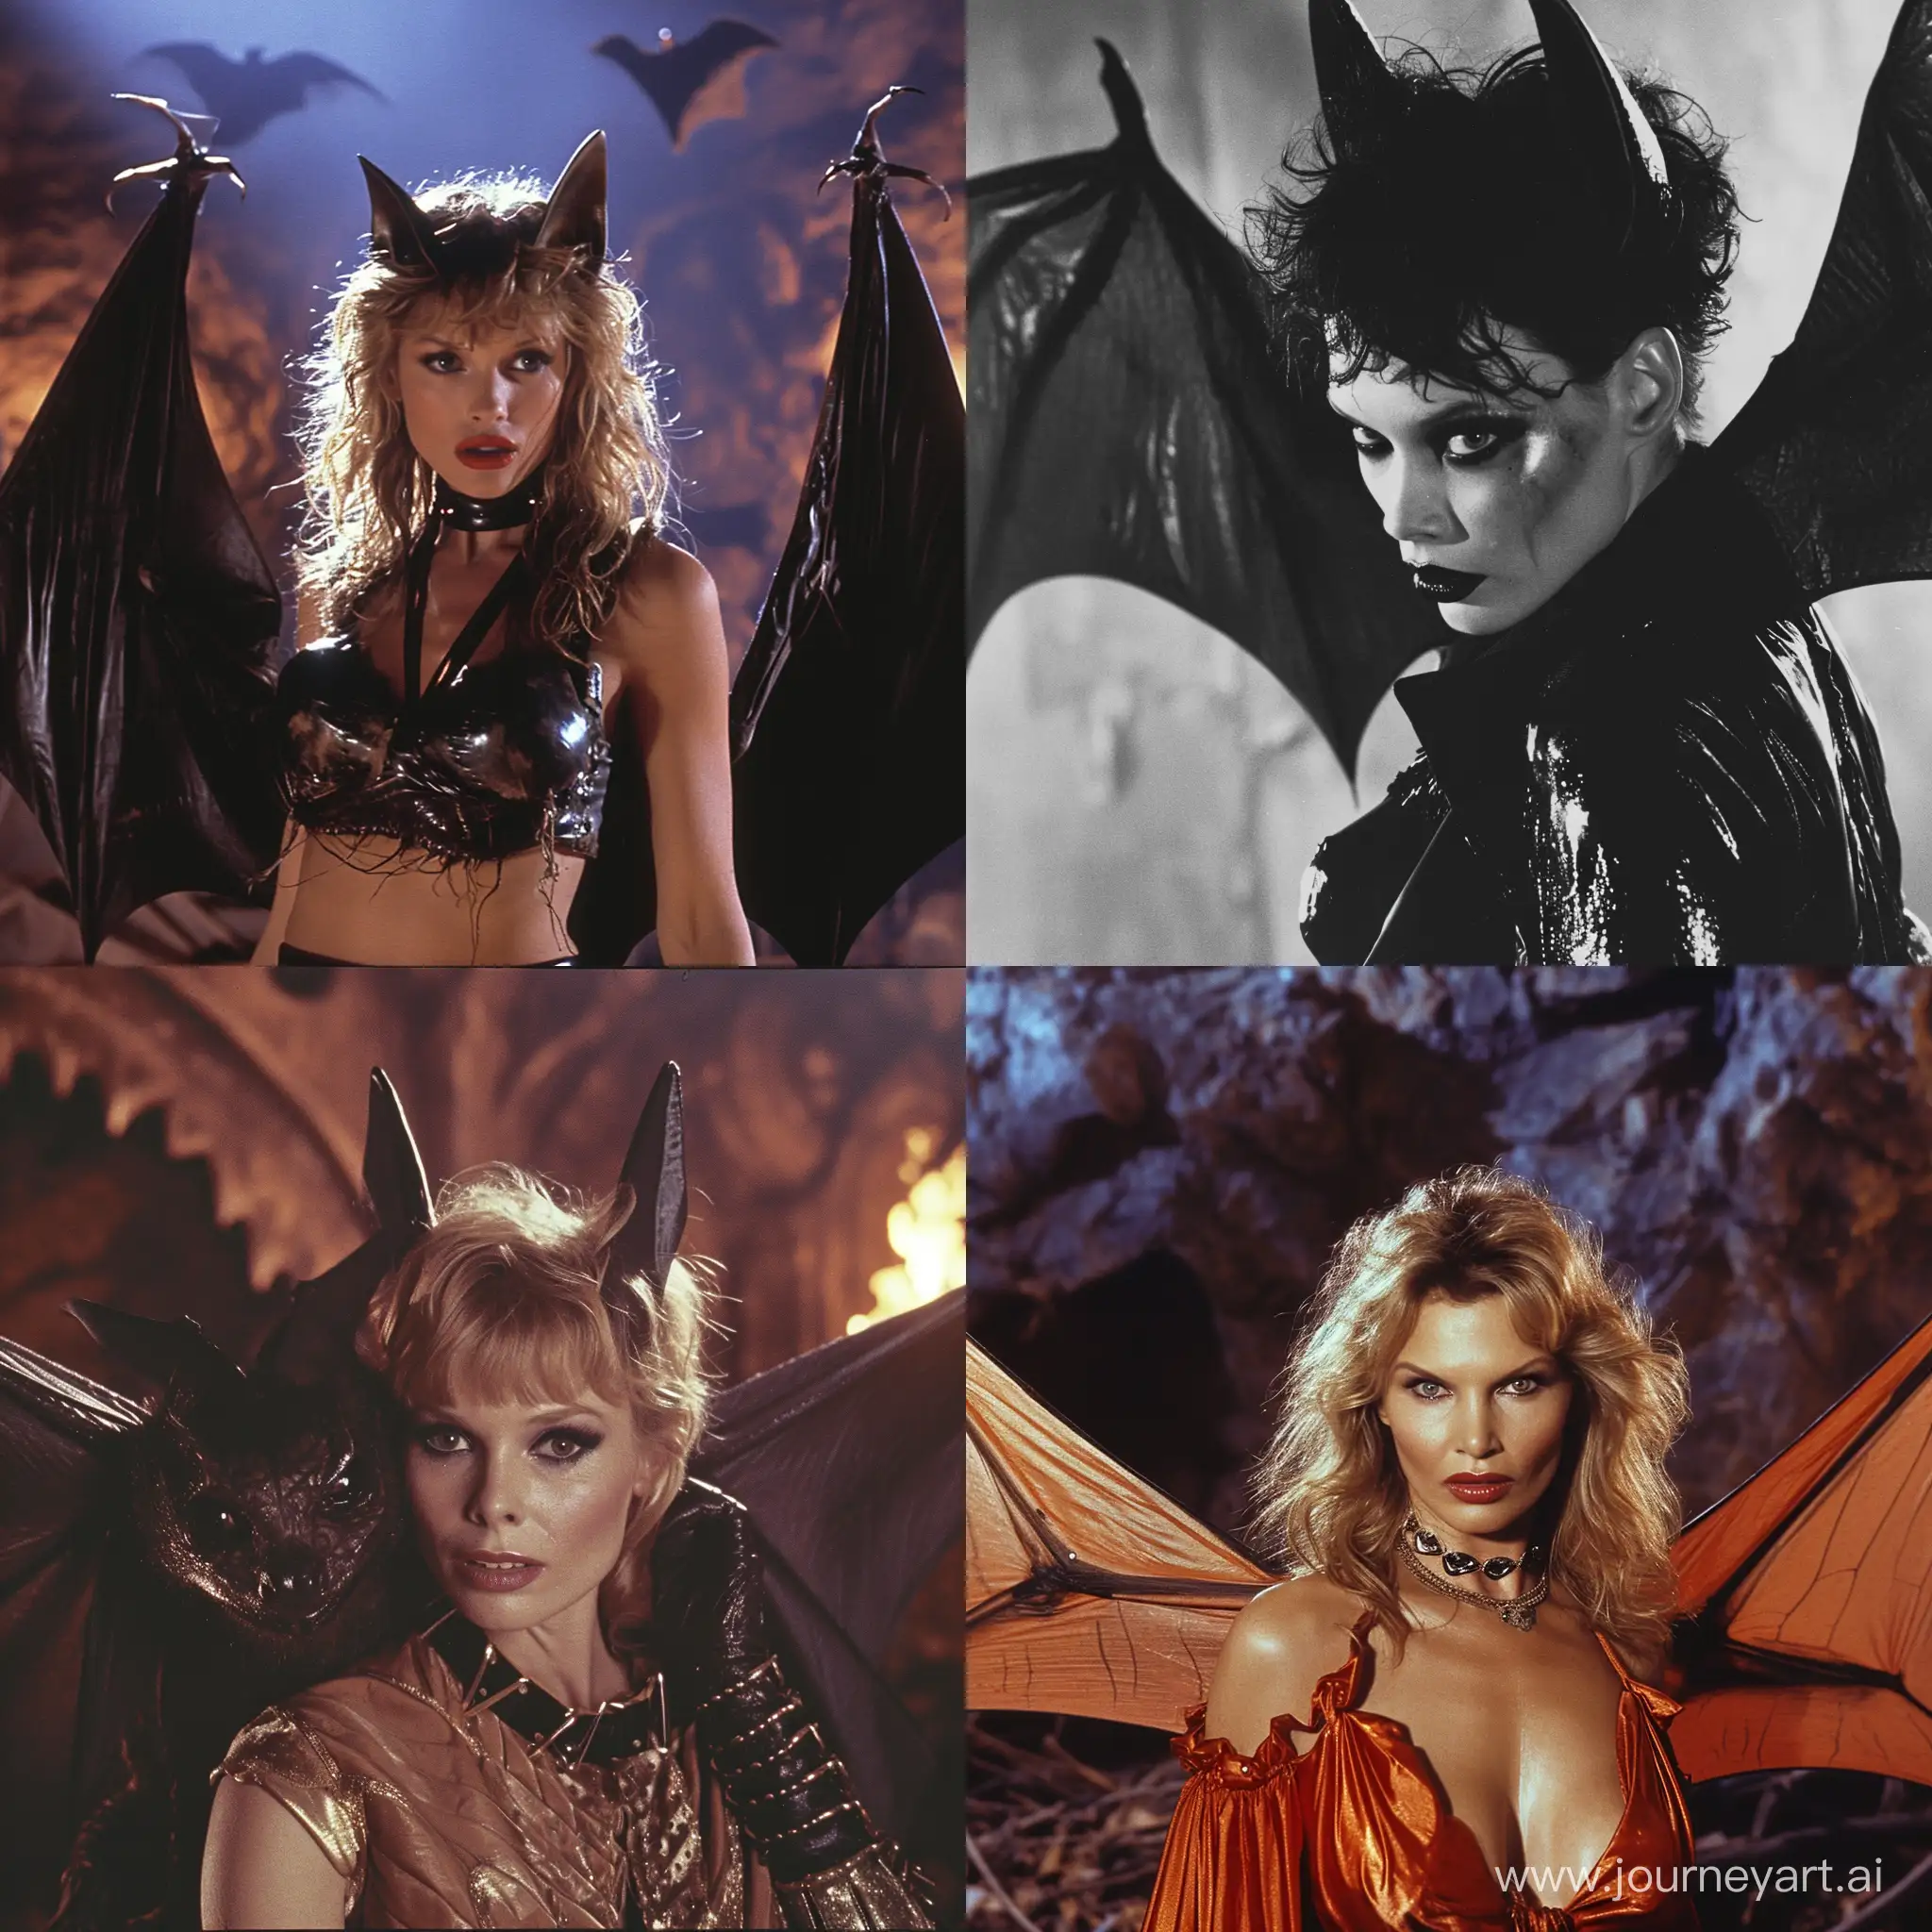 Nicole-Scherzinger-Stars-in-80s-Horror-Film-as-BatLike-Vampire